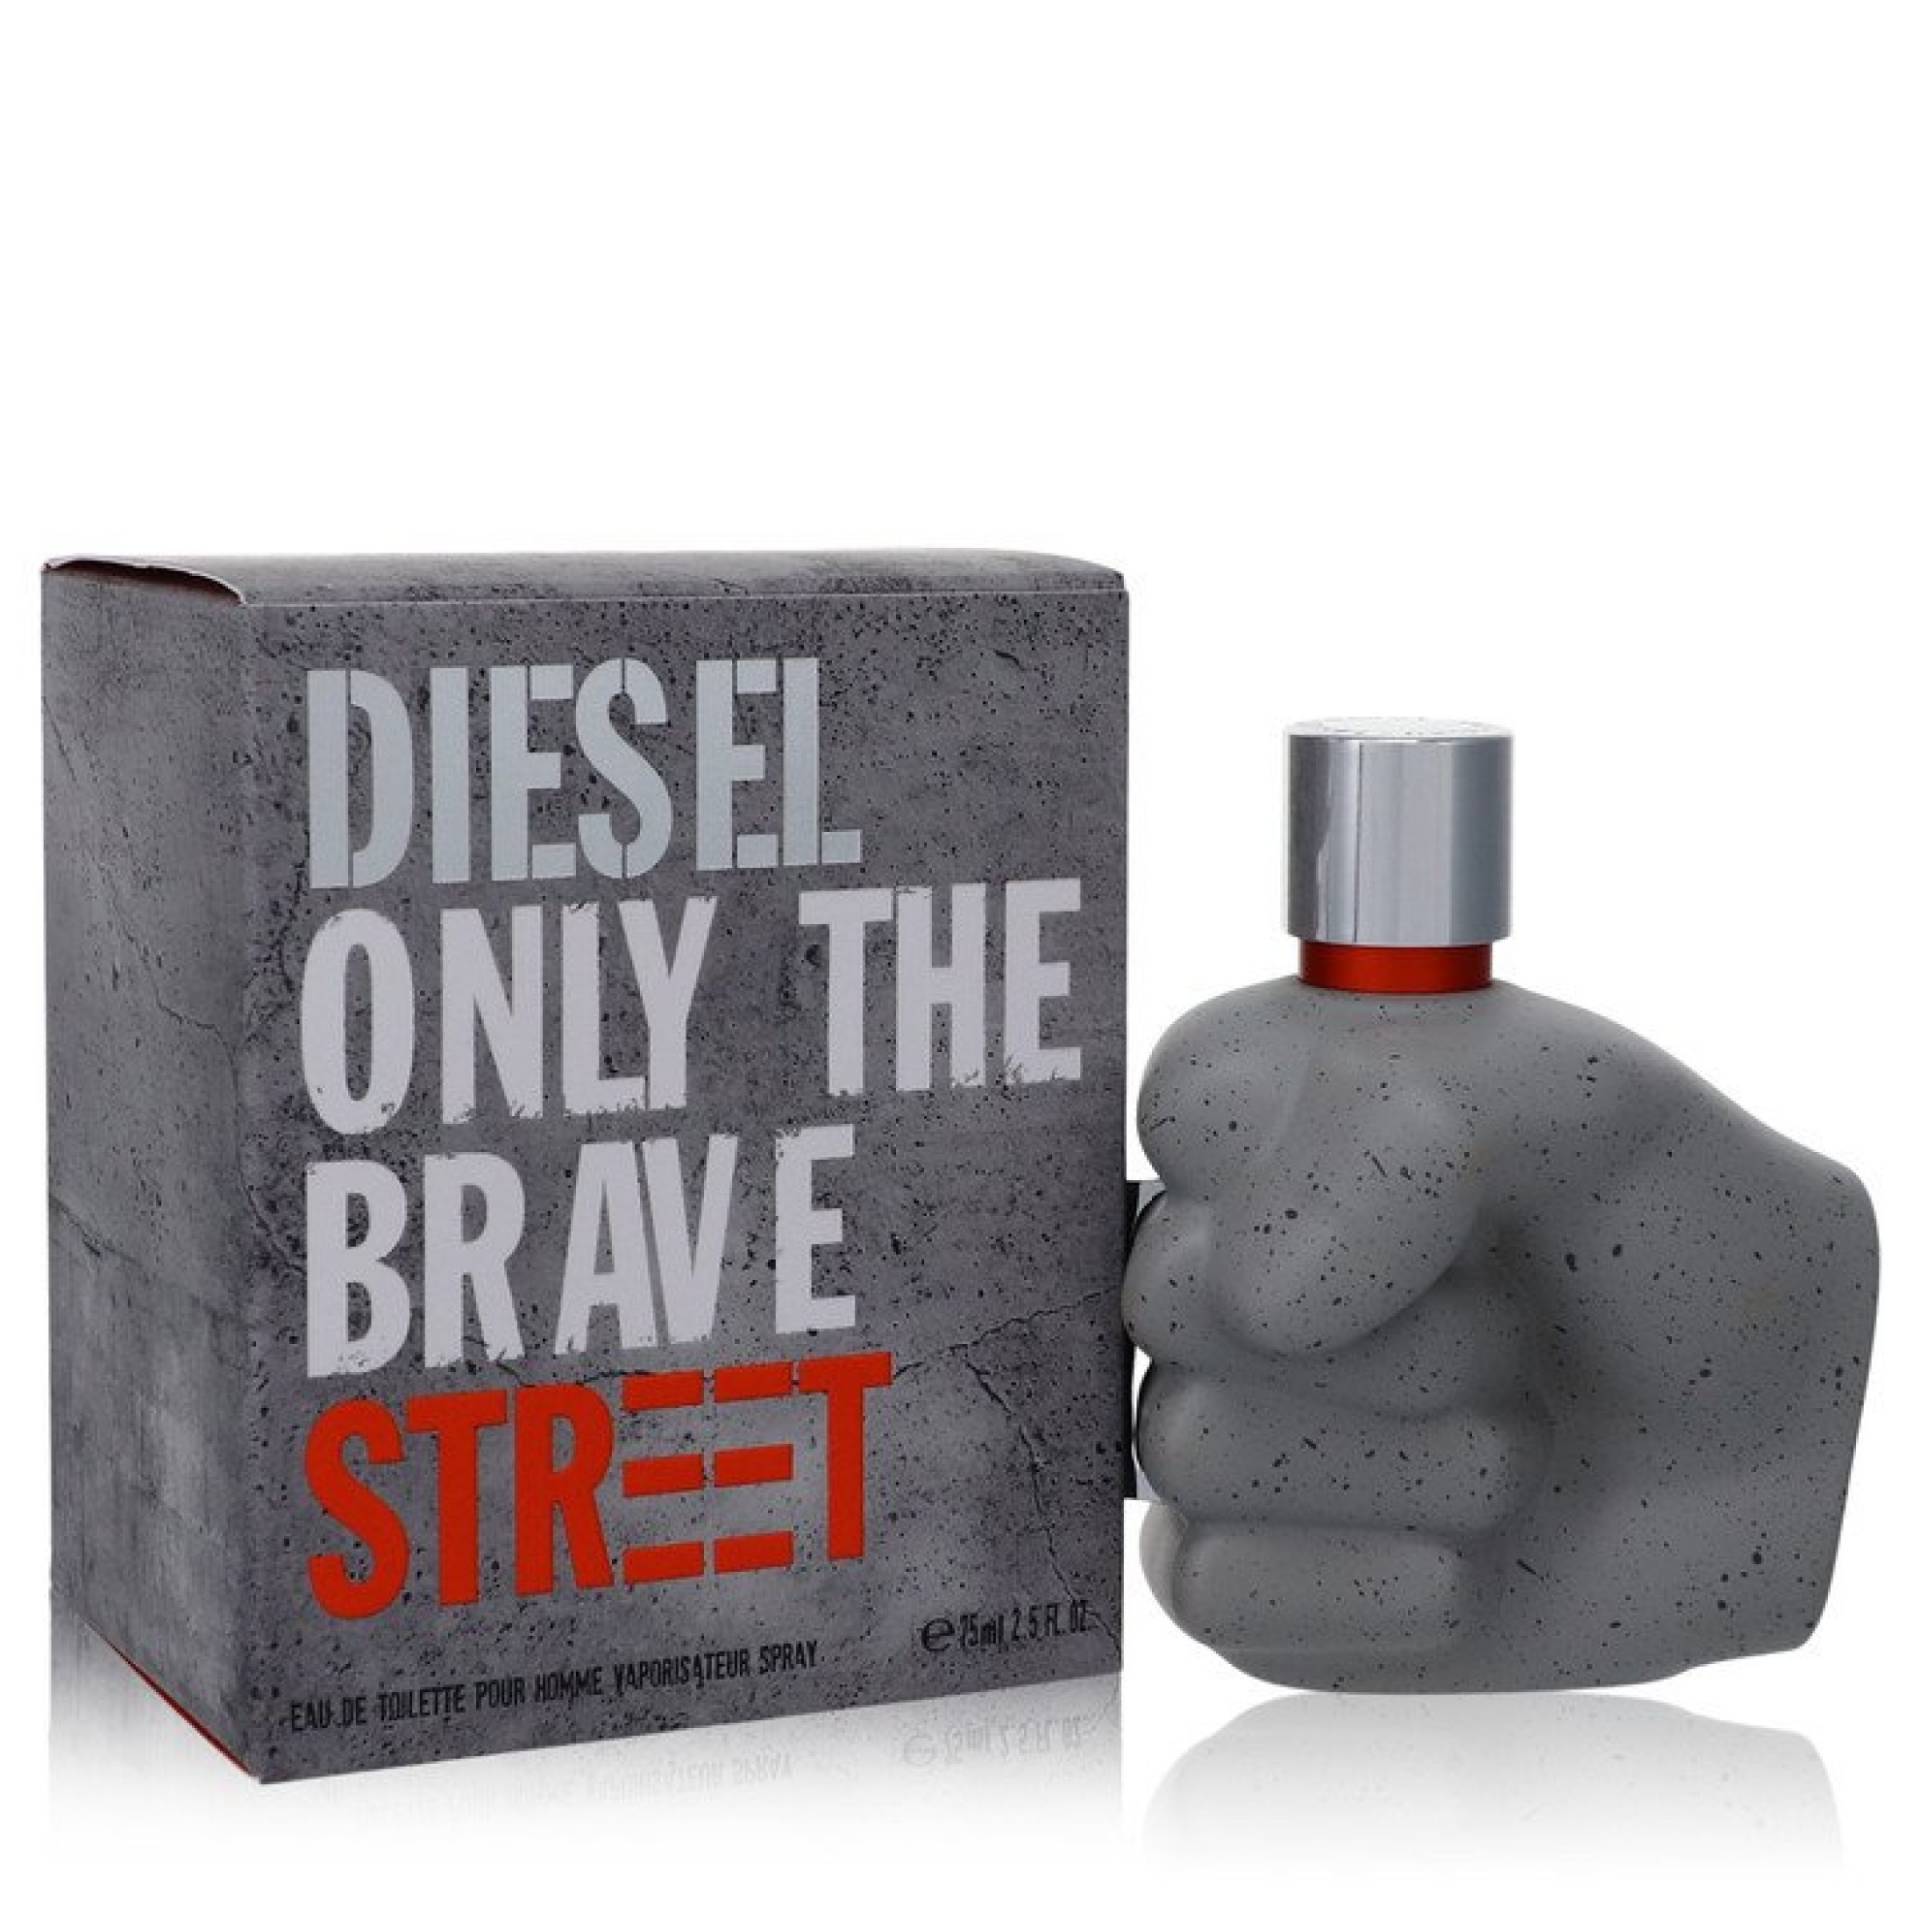 Diesel Only the Brave Street Eau De Toilette Spray 75 ml von Diesel